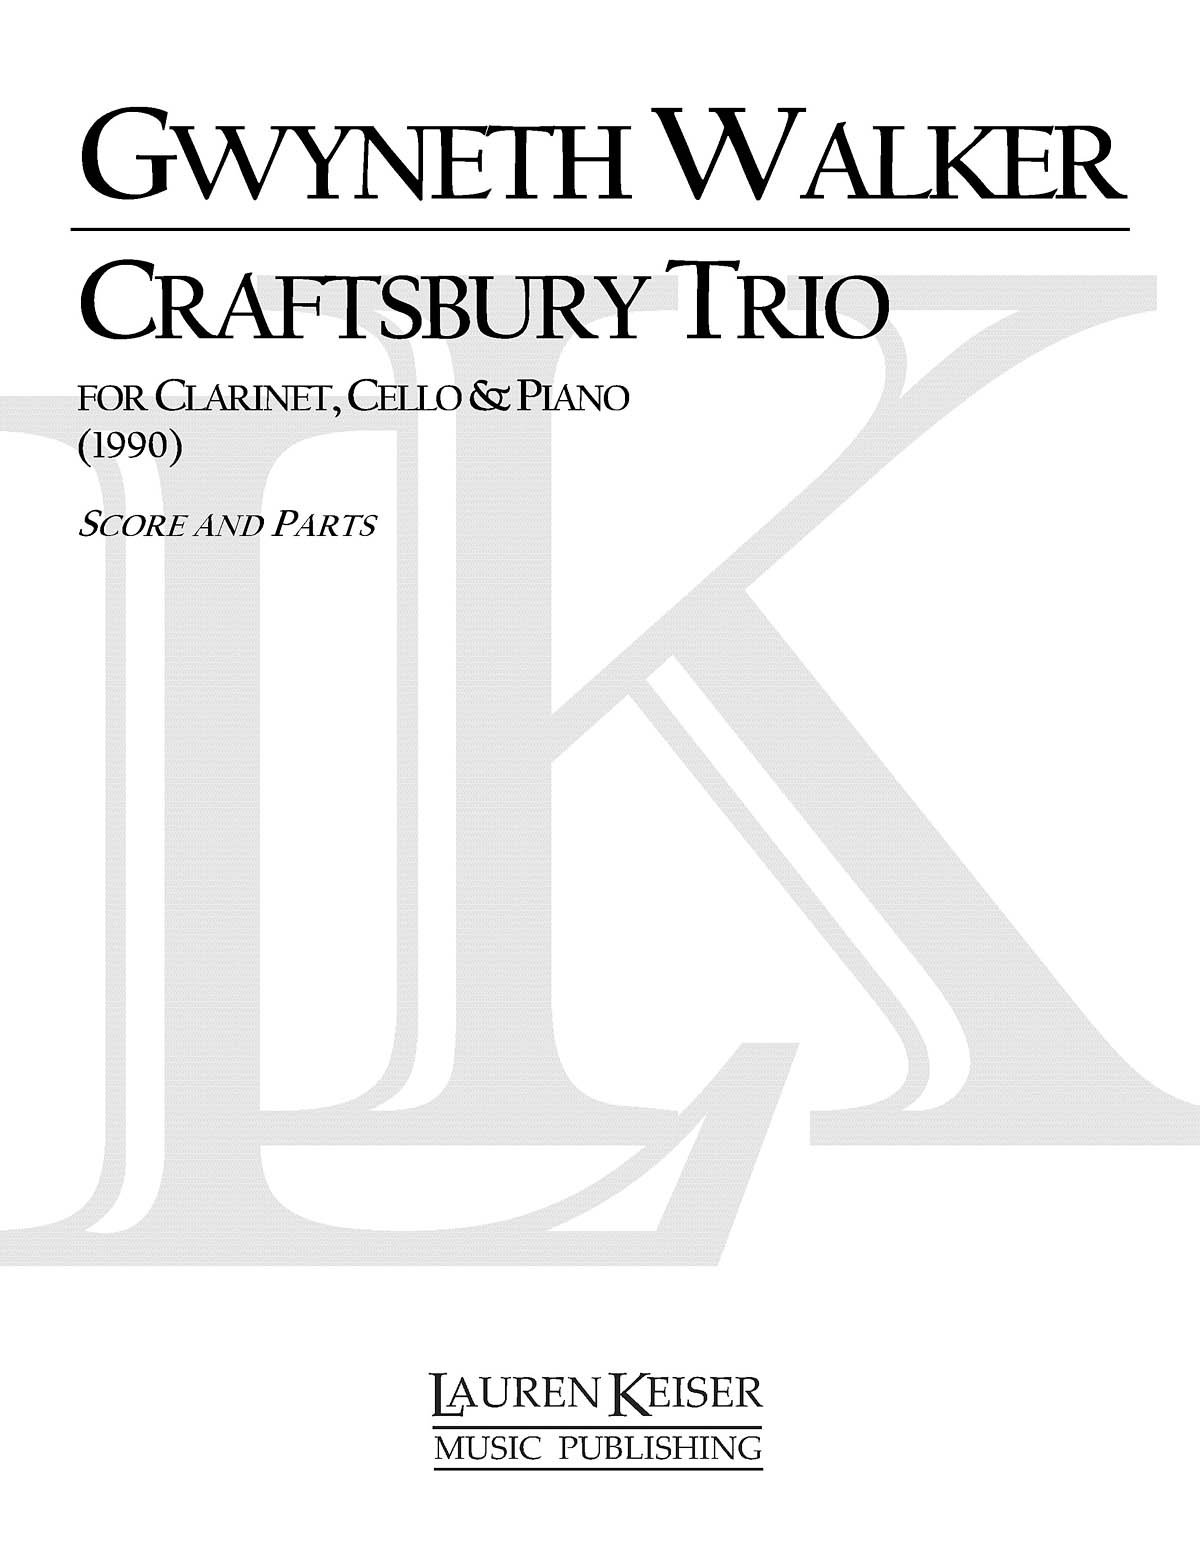 Craftsbury Trio for Clarinet, Cello and Piano